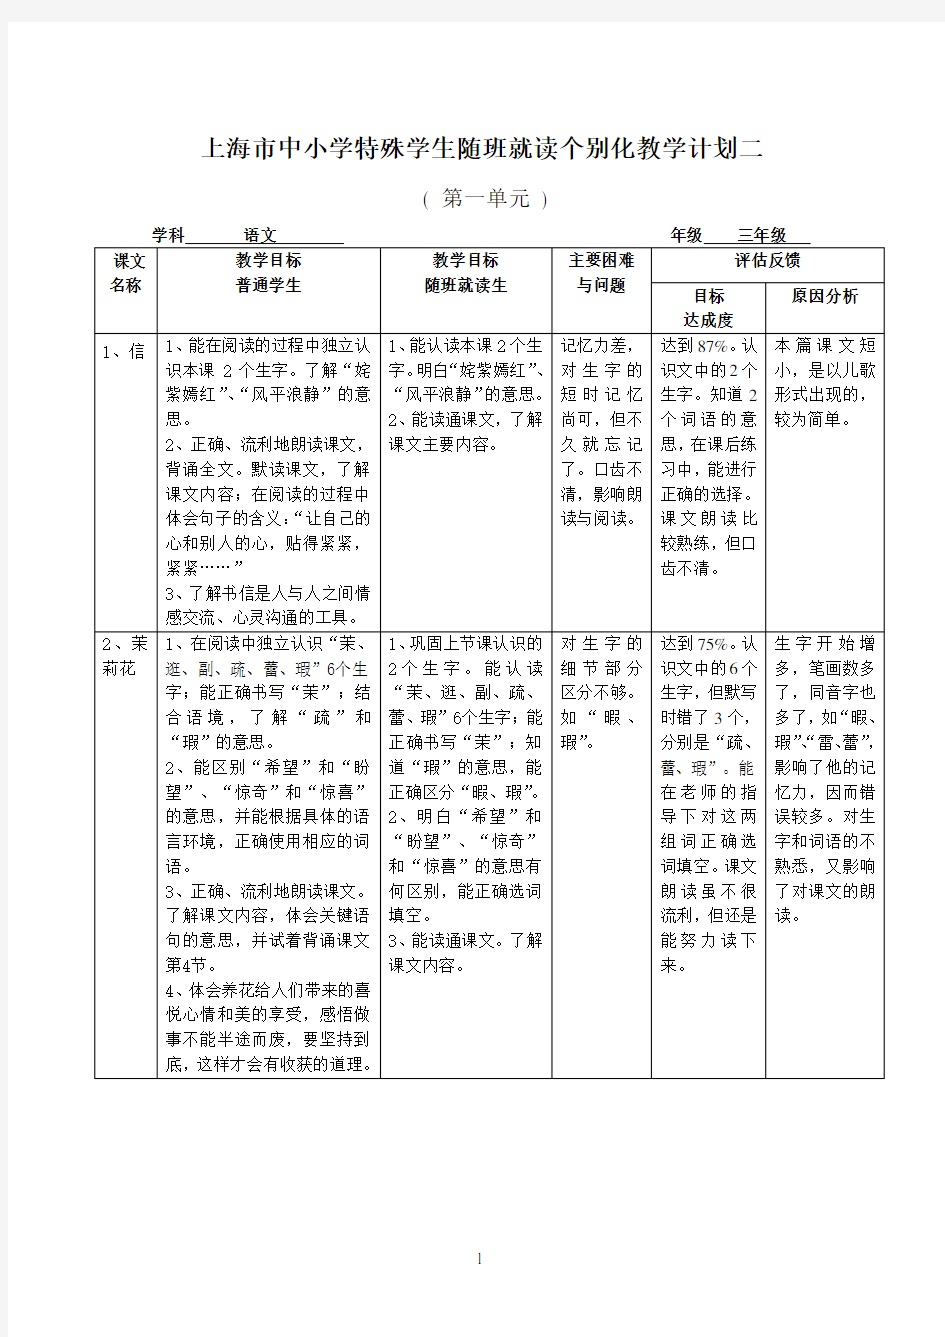 上海市中小学特殊学生随班就读个别化教学计划二